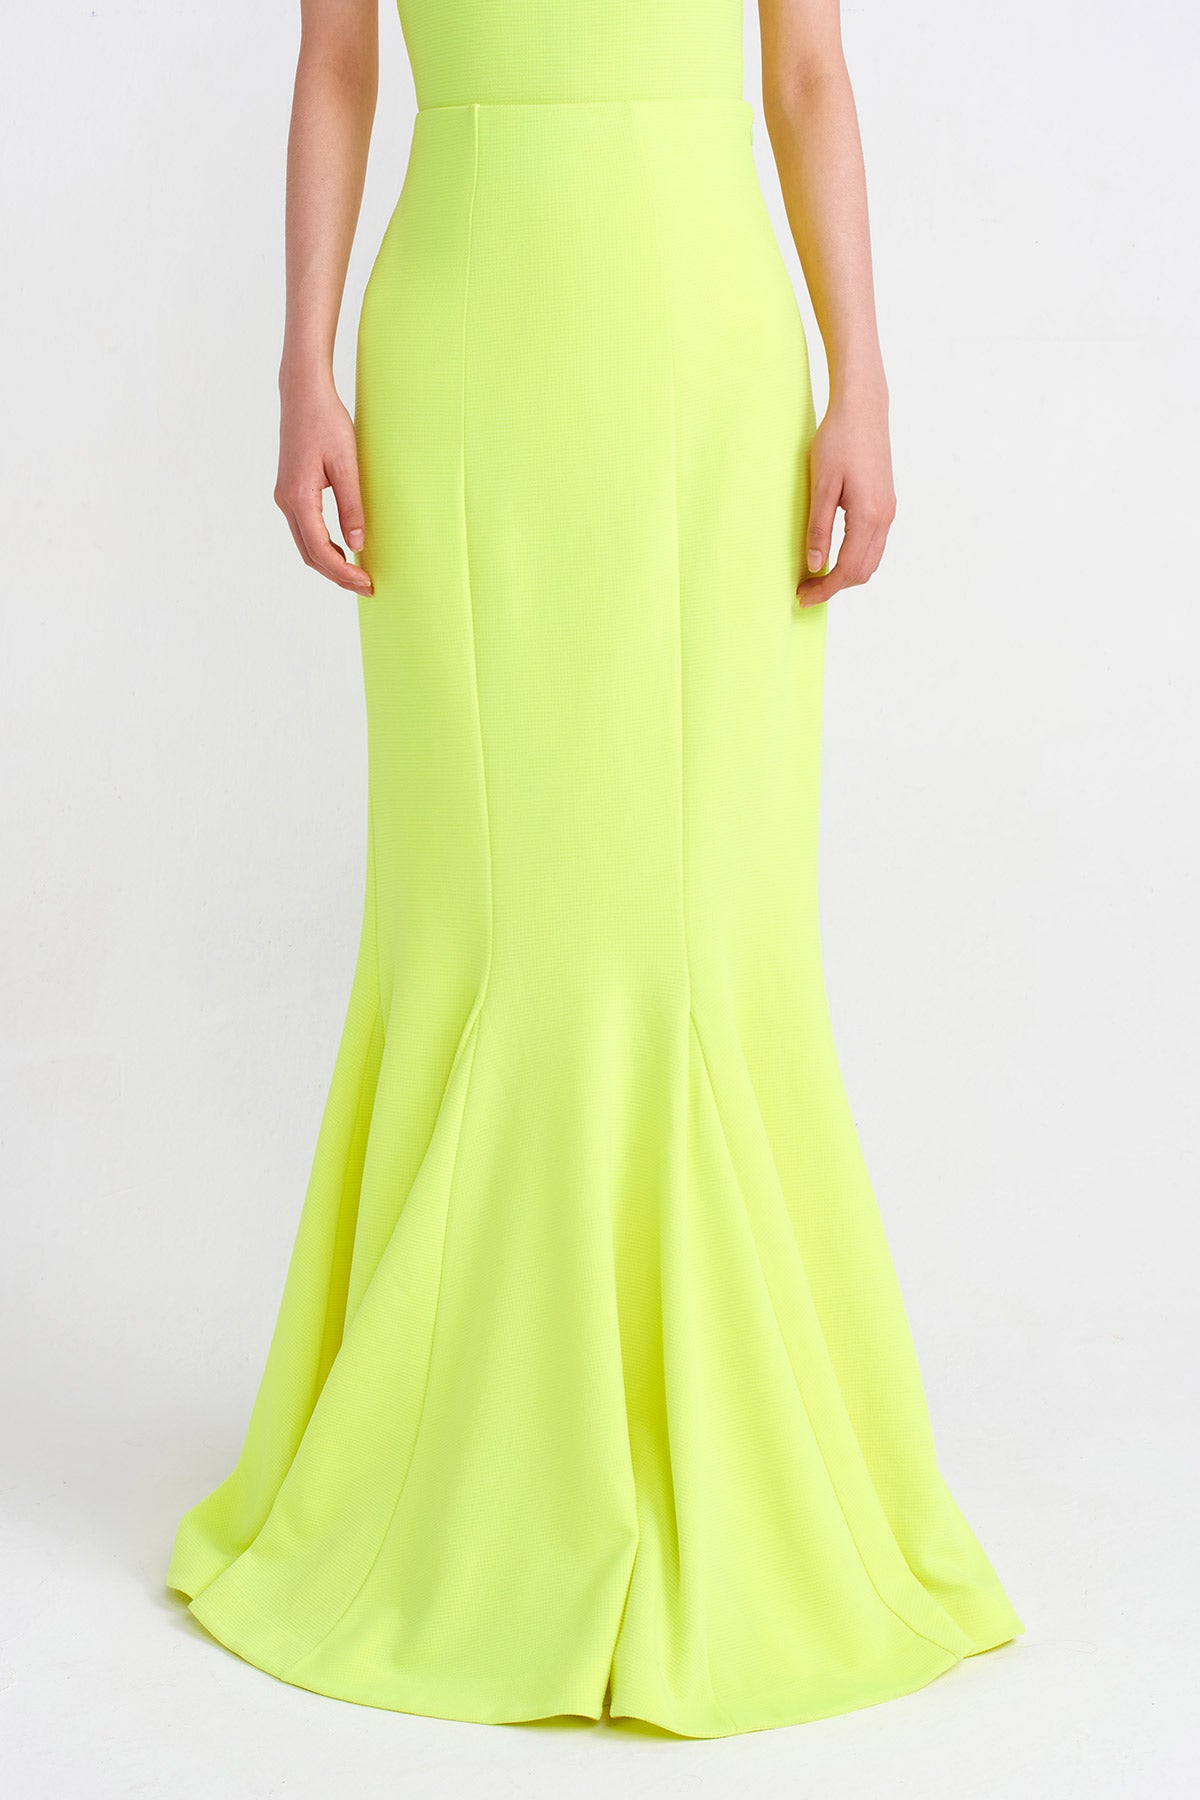 Neon Asit Yeşil Mermaid Skirt-Y242012020